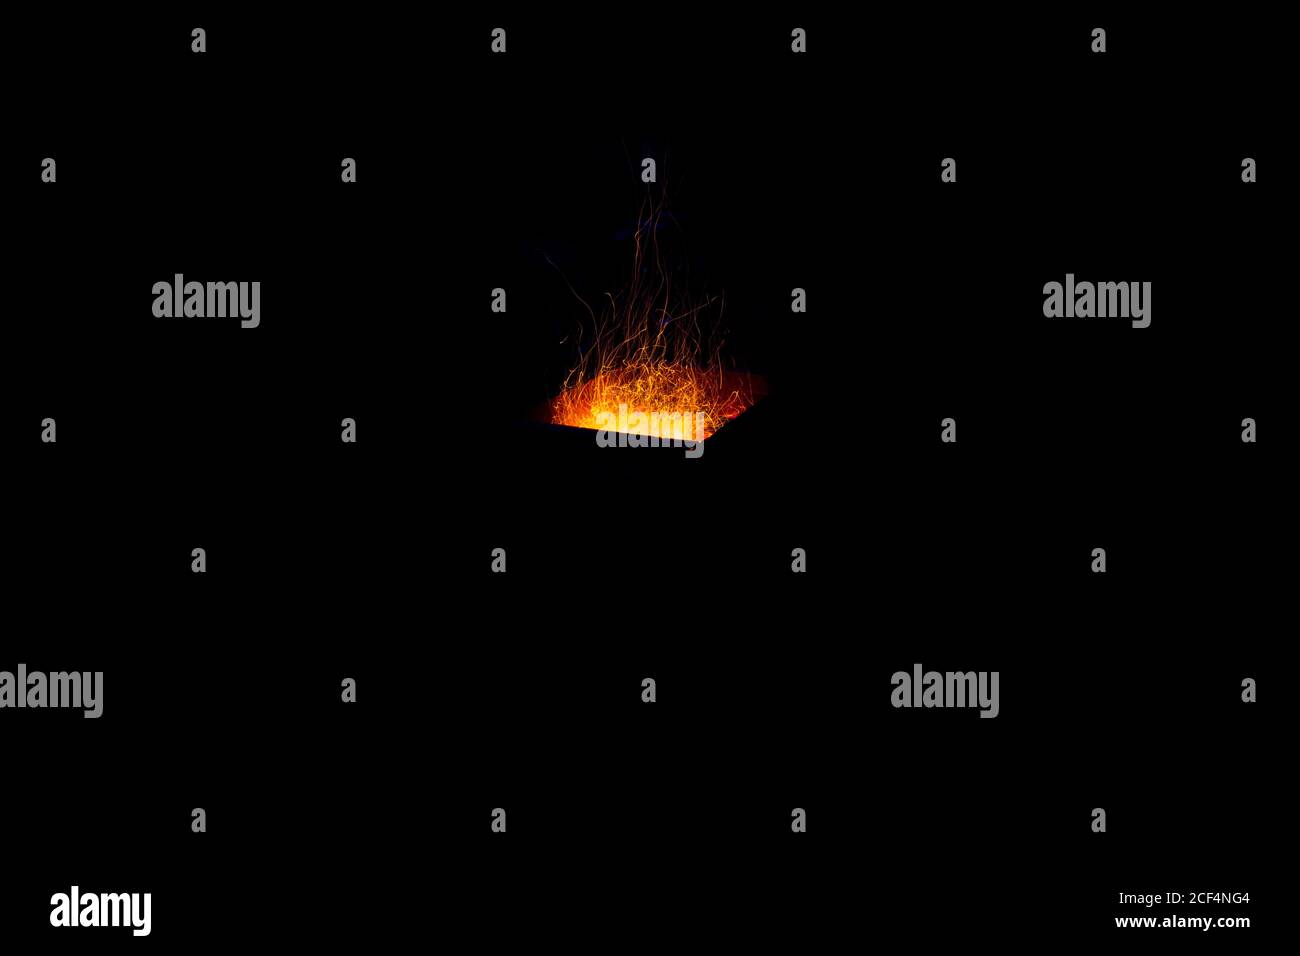 Burning sparks on exposure, black background Stock Photo